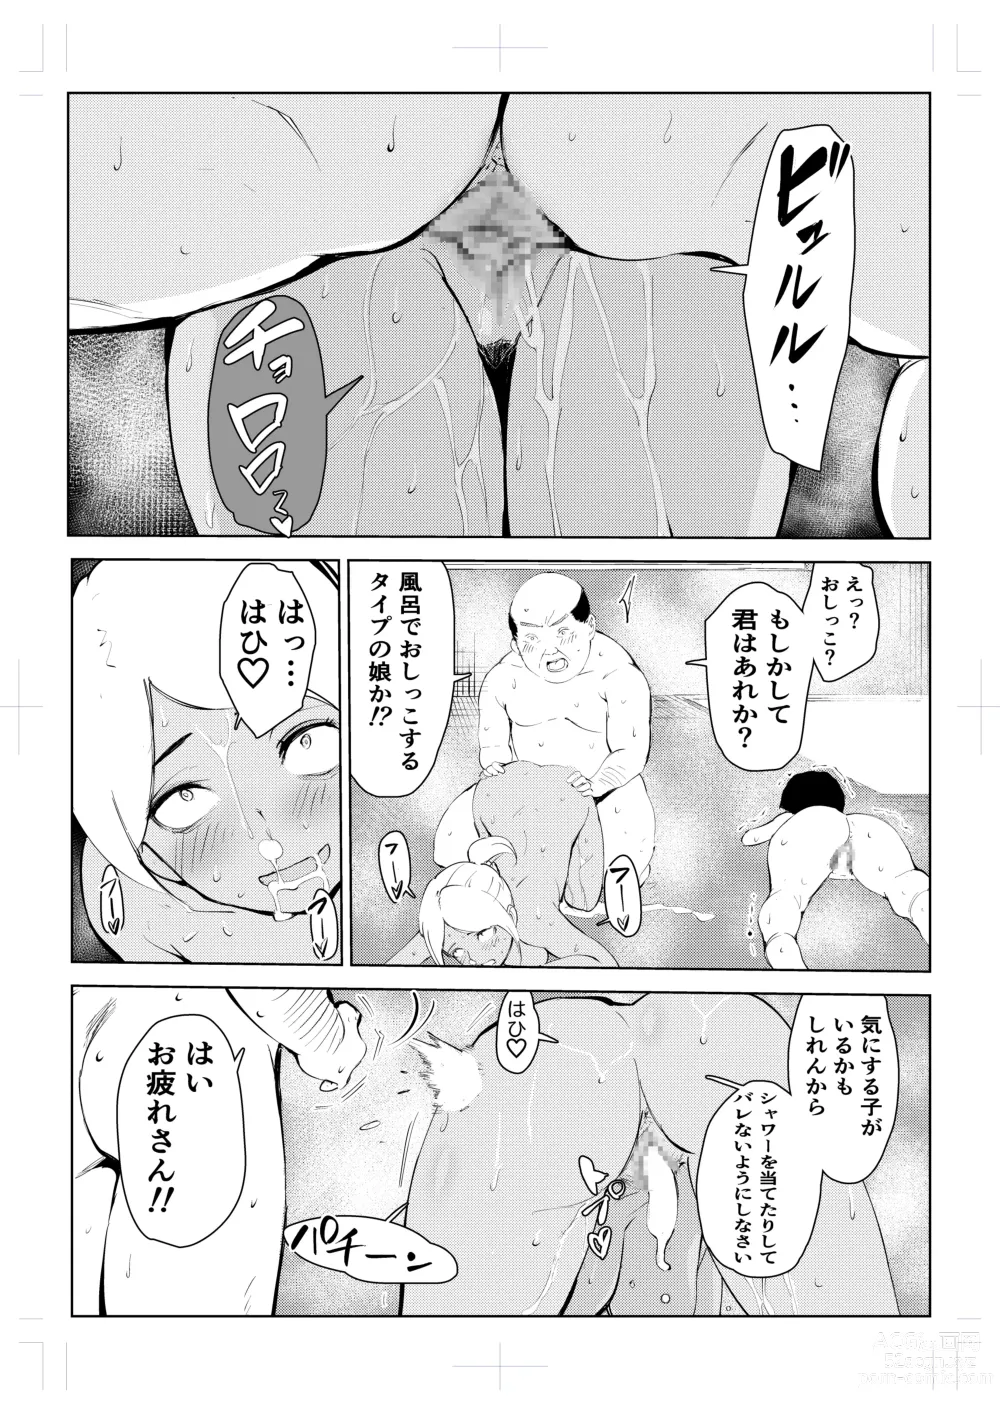 Page 76 of doujinshi 40-sai no Mahoutsukai 4